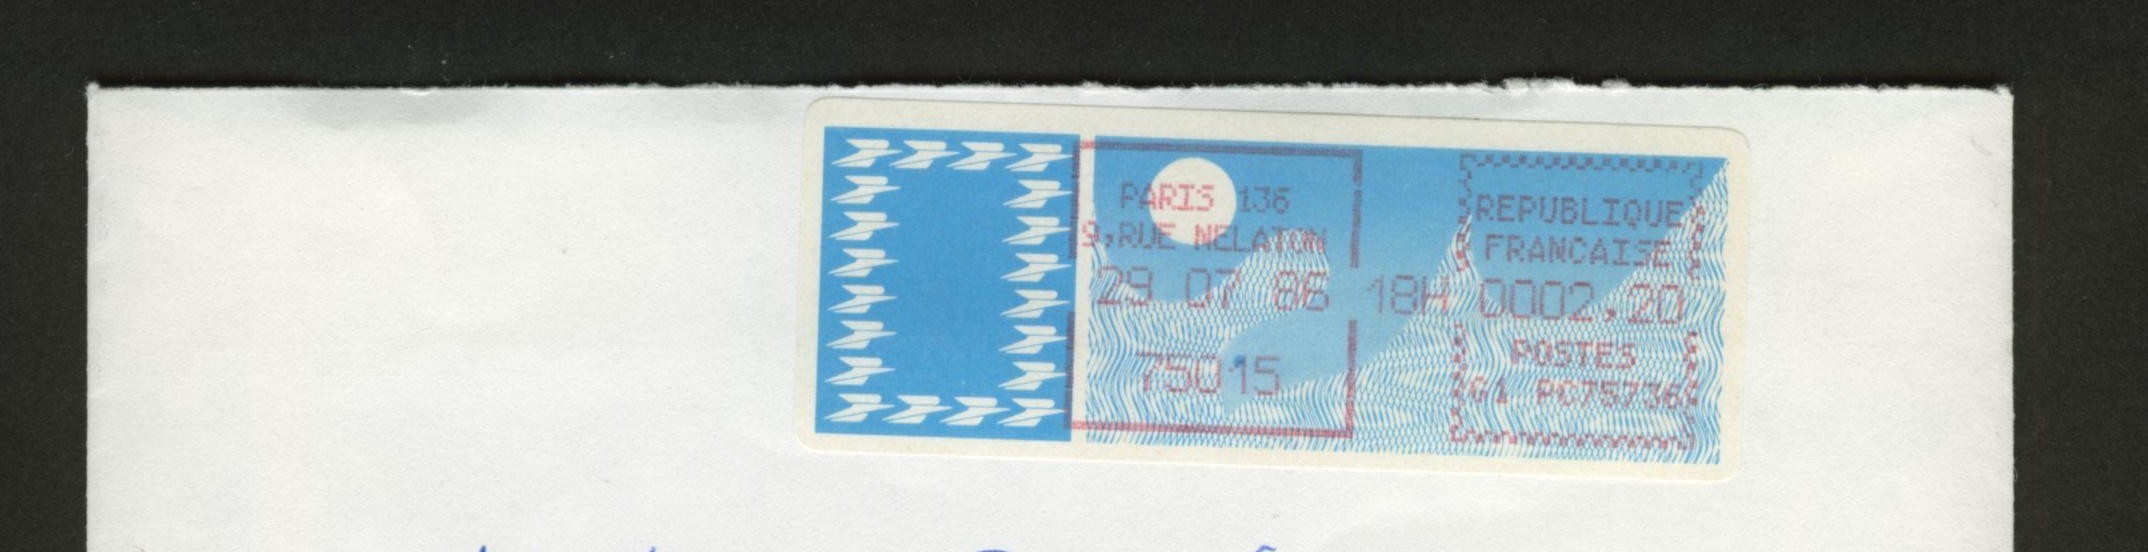 VIGNETTE à 2.20 F  Sur Enveloppe Entière - PARIS 136 75015 - Type N° 95  Cote 8.50 € - 1985 « Carrier » Paper